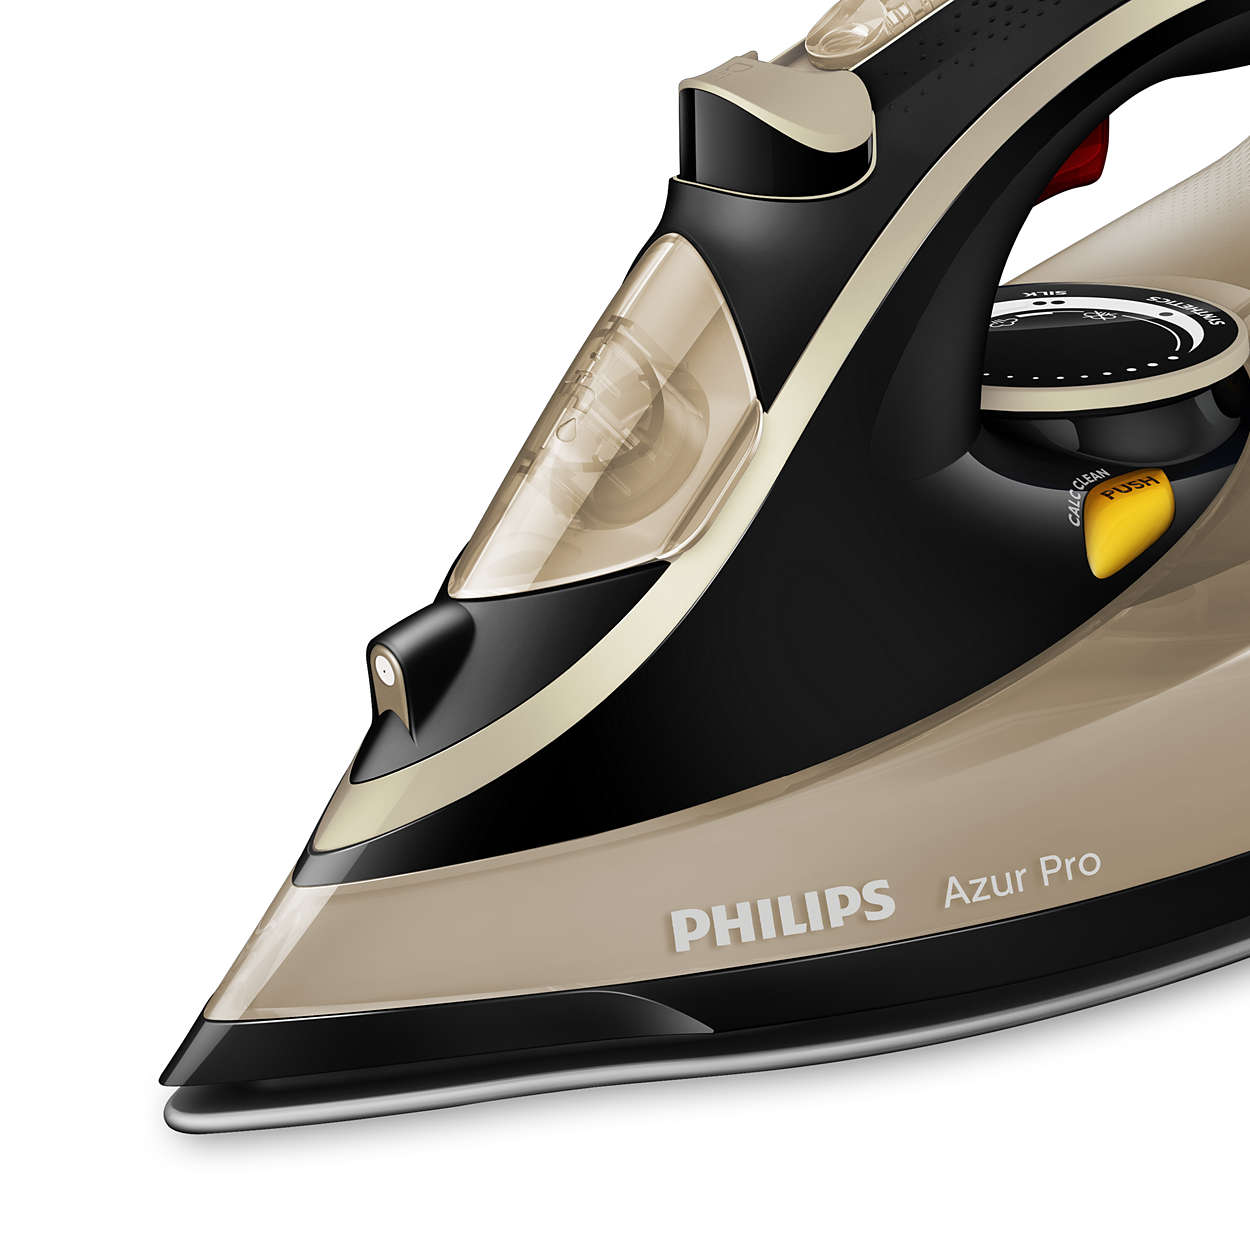 Утюг филипс какой лучше. Утюг Philips Azur Pro 3000w. Philips gc4887/30 Azur Pro. Утюг Филипс Азур. Утюг Филипс Azur Pro 4885.